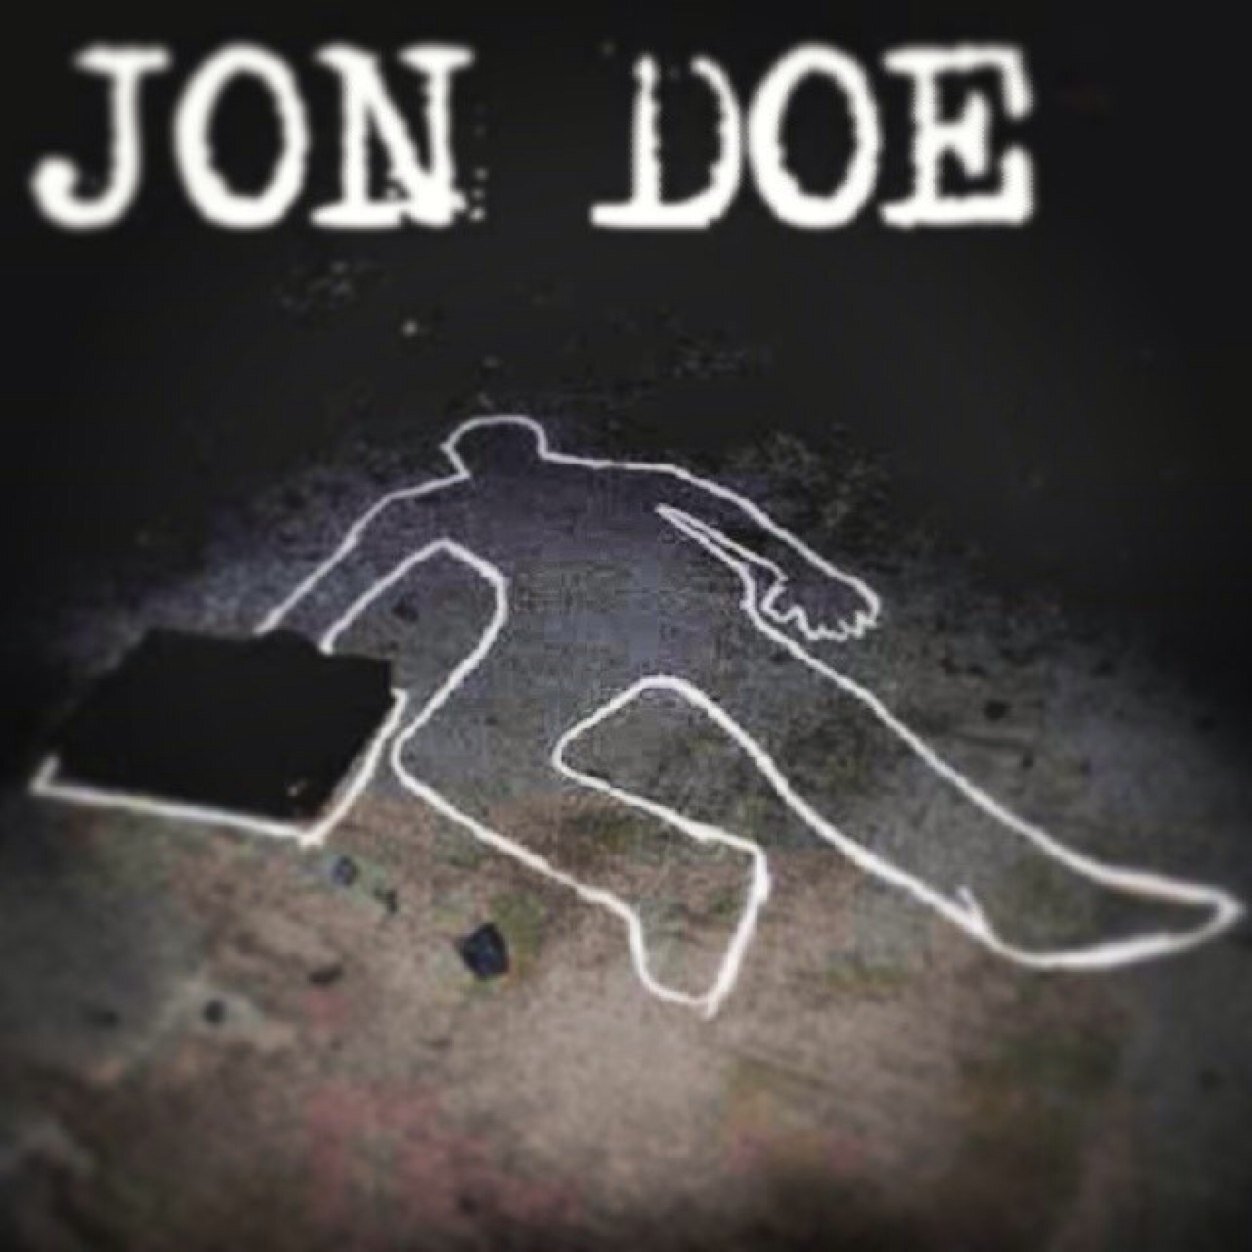 Who is Jon Doe?